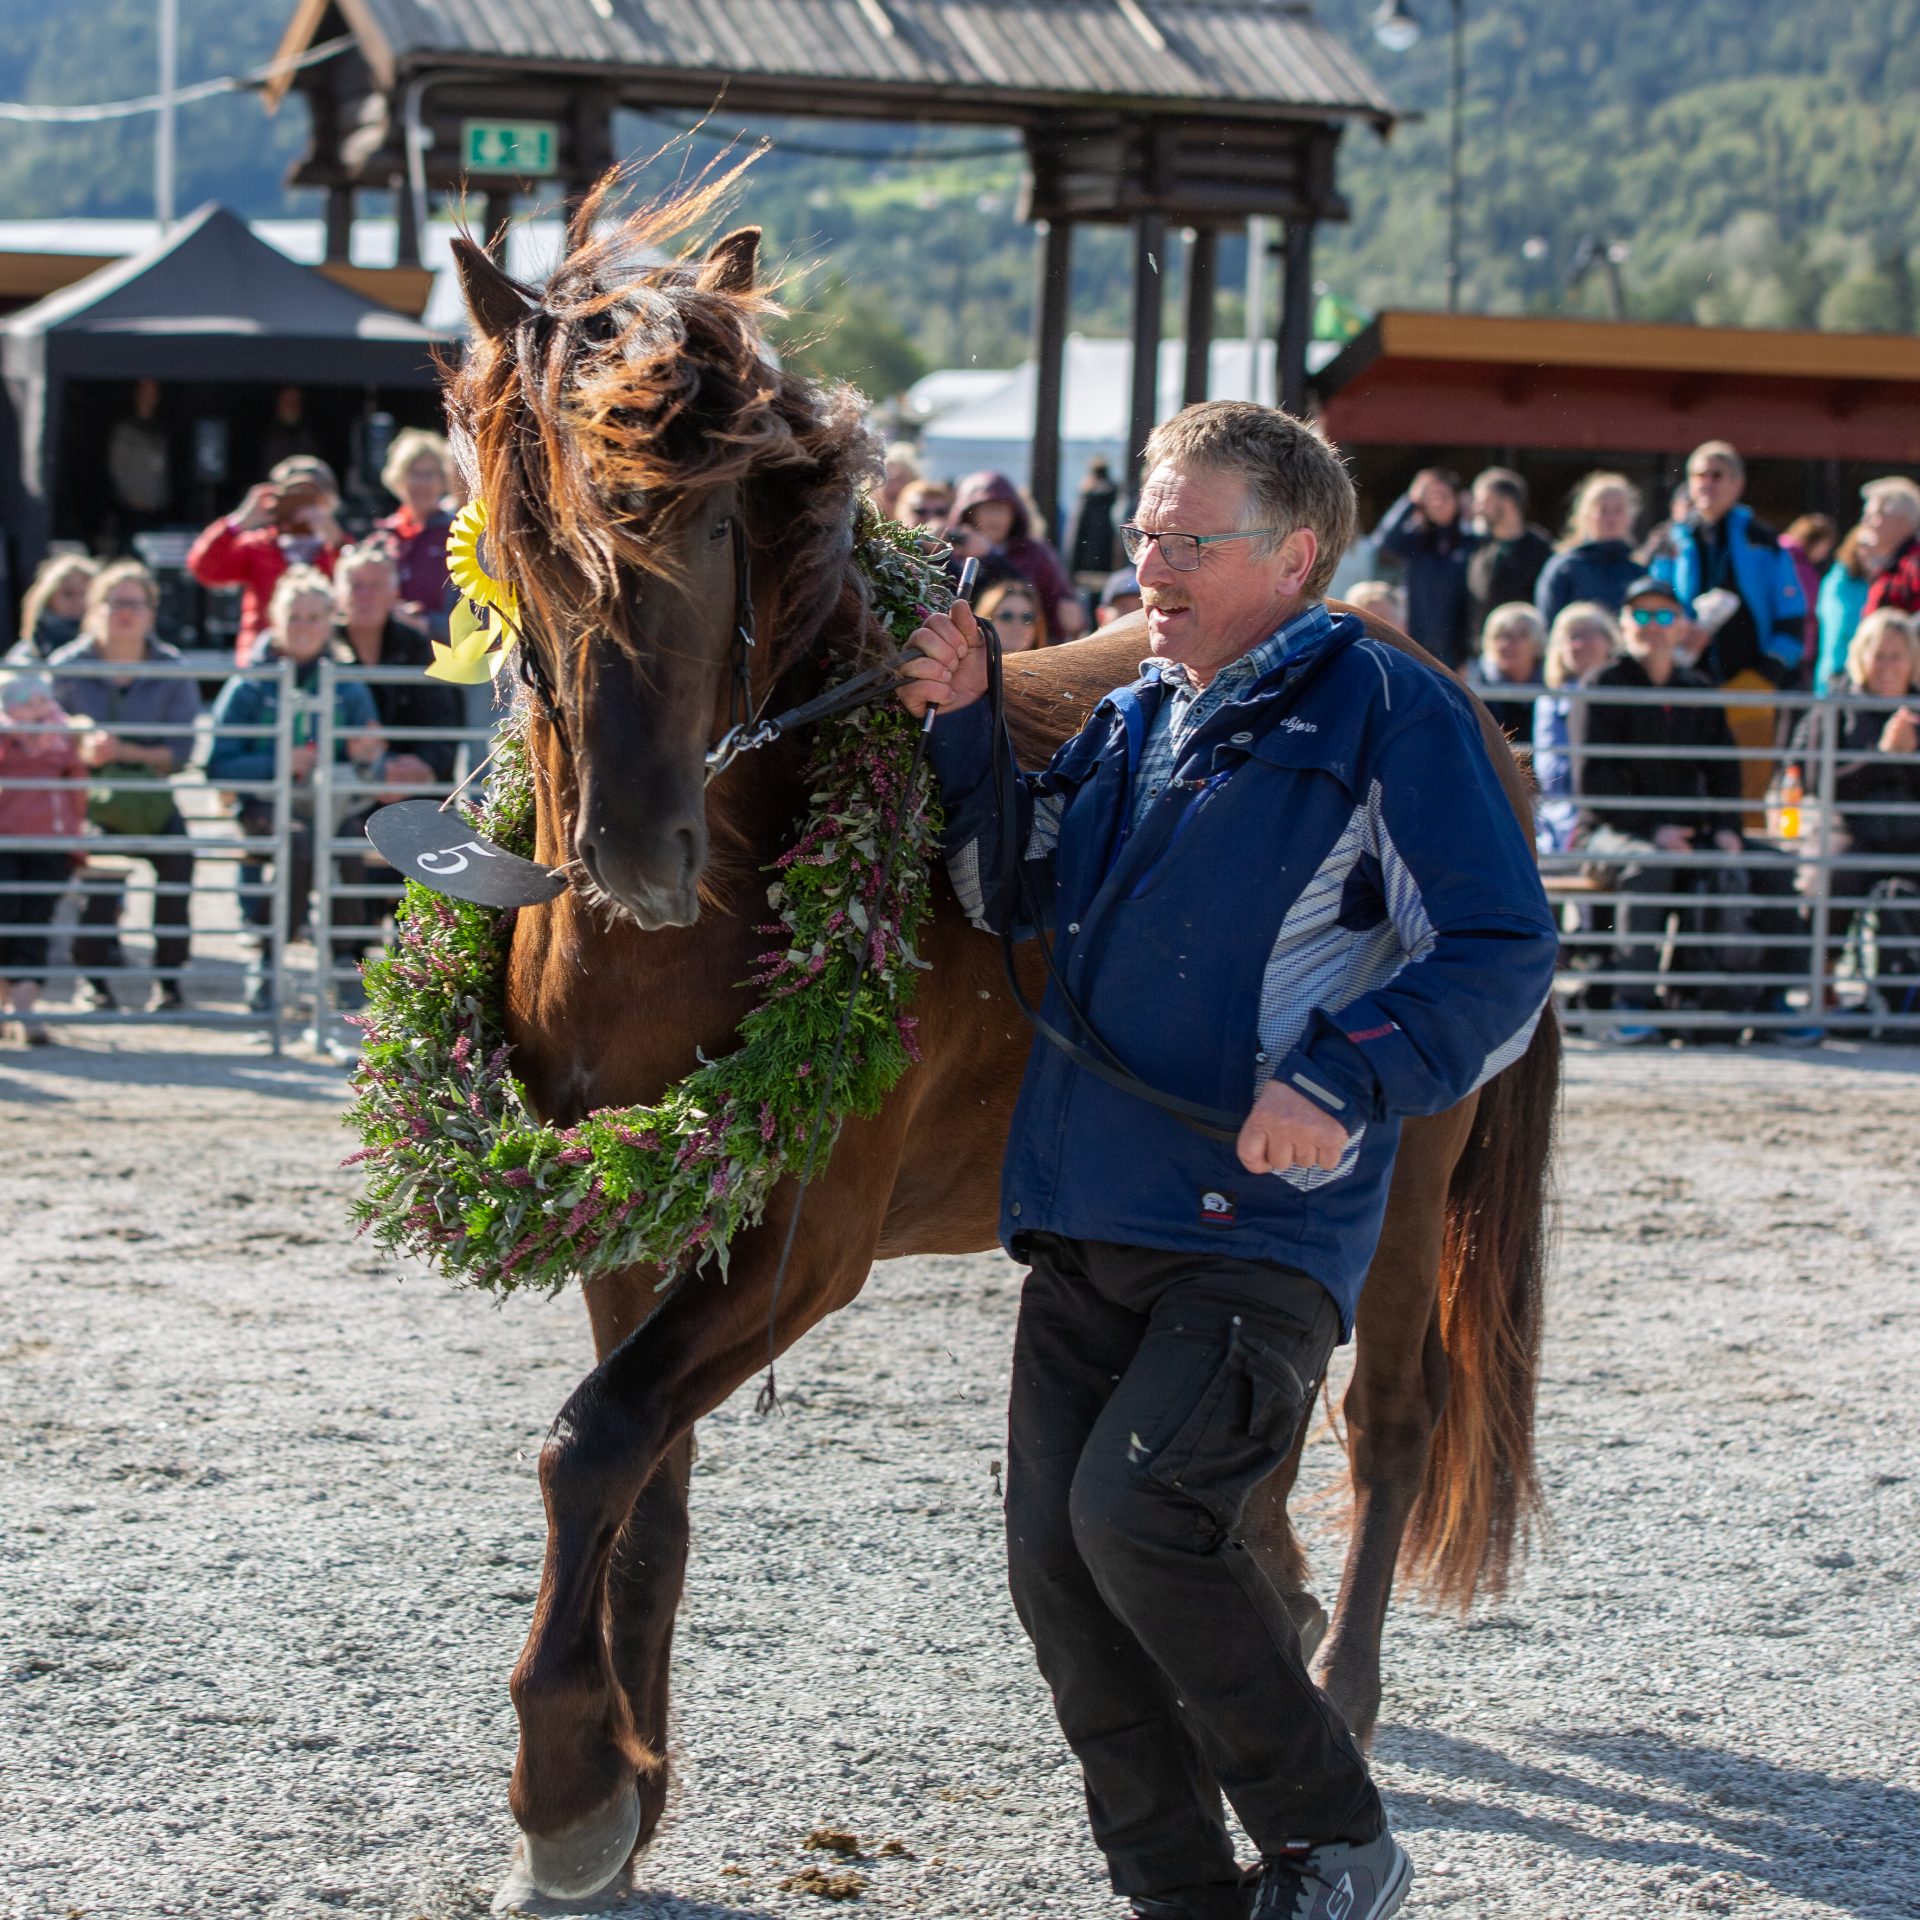 Hesteutstillinga på Dyrsku'n er blant ei av dei største i landet, og premiane frå utstillinga heng høgt. Kaldblodstravaren Ness Tjo Stjernen vart kåra til Dagens unghest på Dyrsku'n 2019.